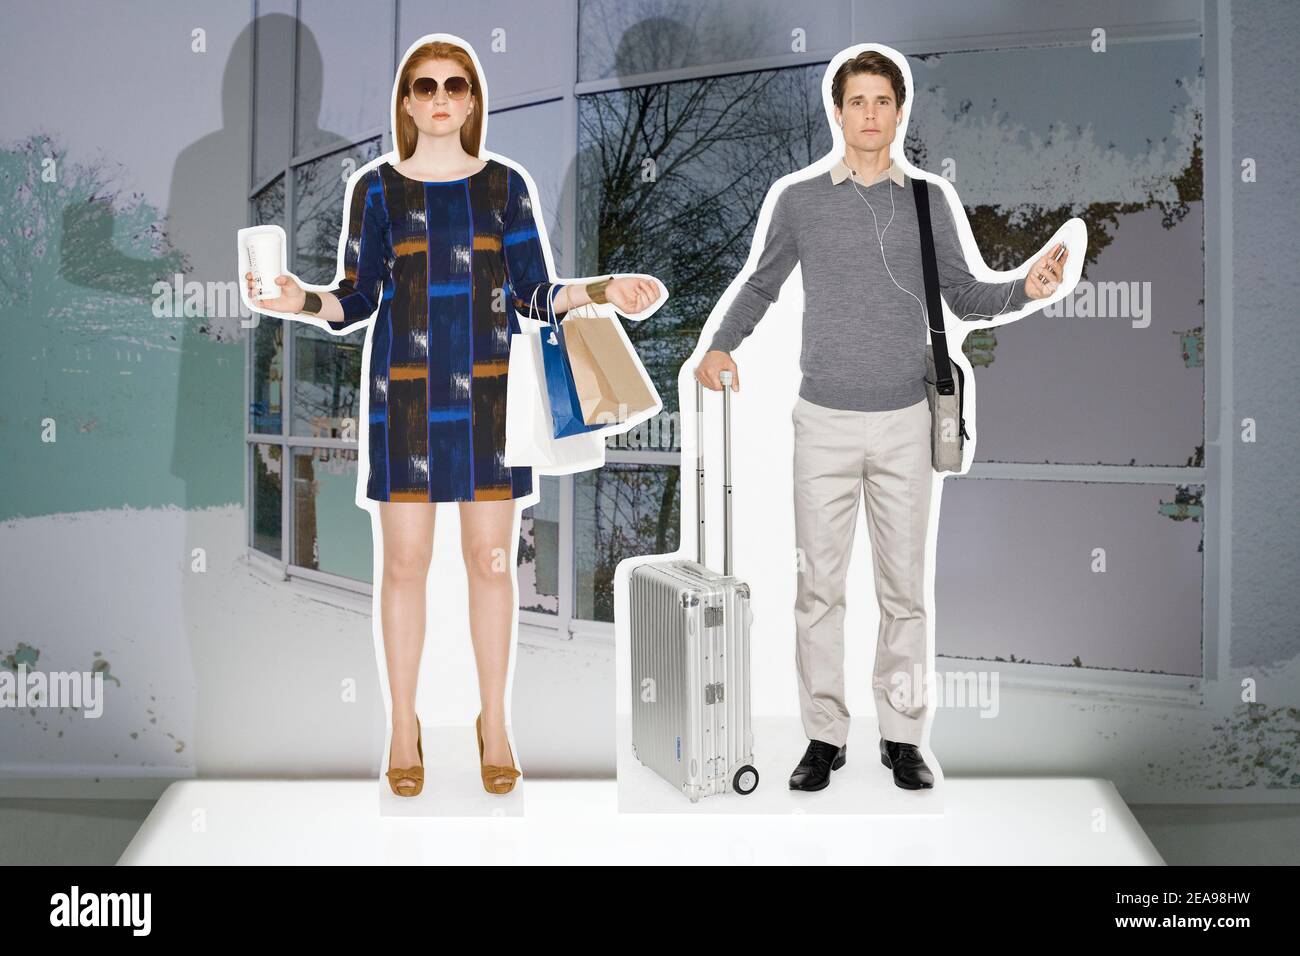 Mann und Frau, ausgeschnittene Figuren, Collage, Flugkoffer, Aktentasche, Coffee to go, Einkaufstaschen, Leuchtkasten, Handy, stilisierte Architektur Stockfoto